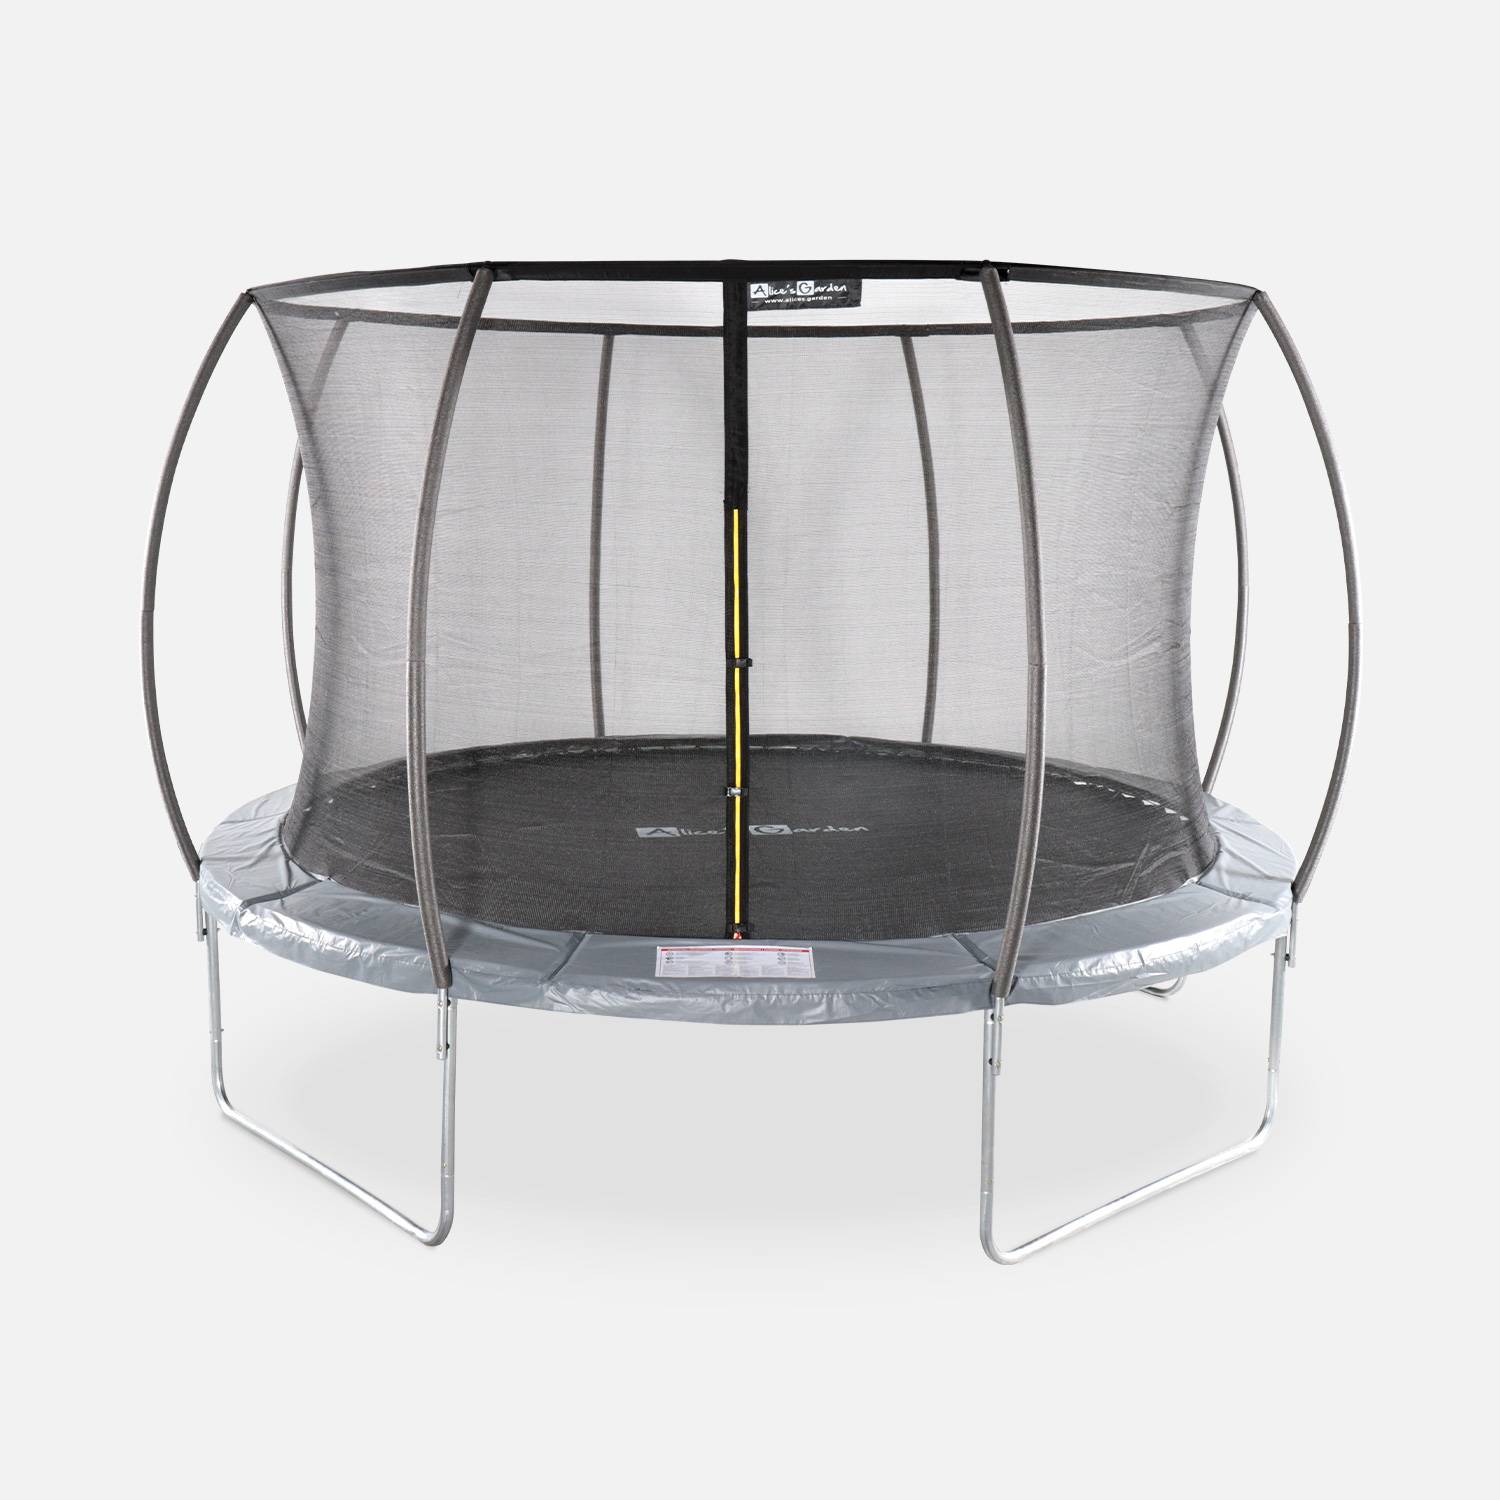 Trampolim redondo Ø 370cm cinza com rede de segurança interna - Saturn Inner - Novo modelo - trampolim de jardim 3,7m 370 cm | Qualidade PRO. | Normas da UE. Photo1